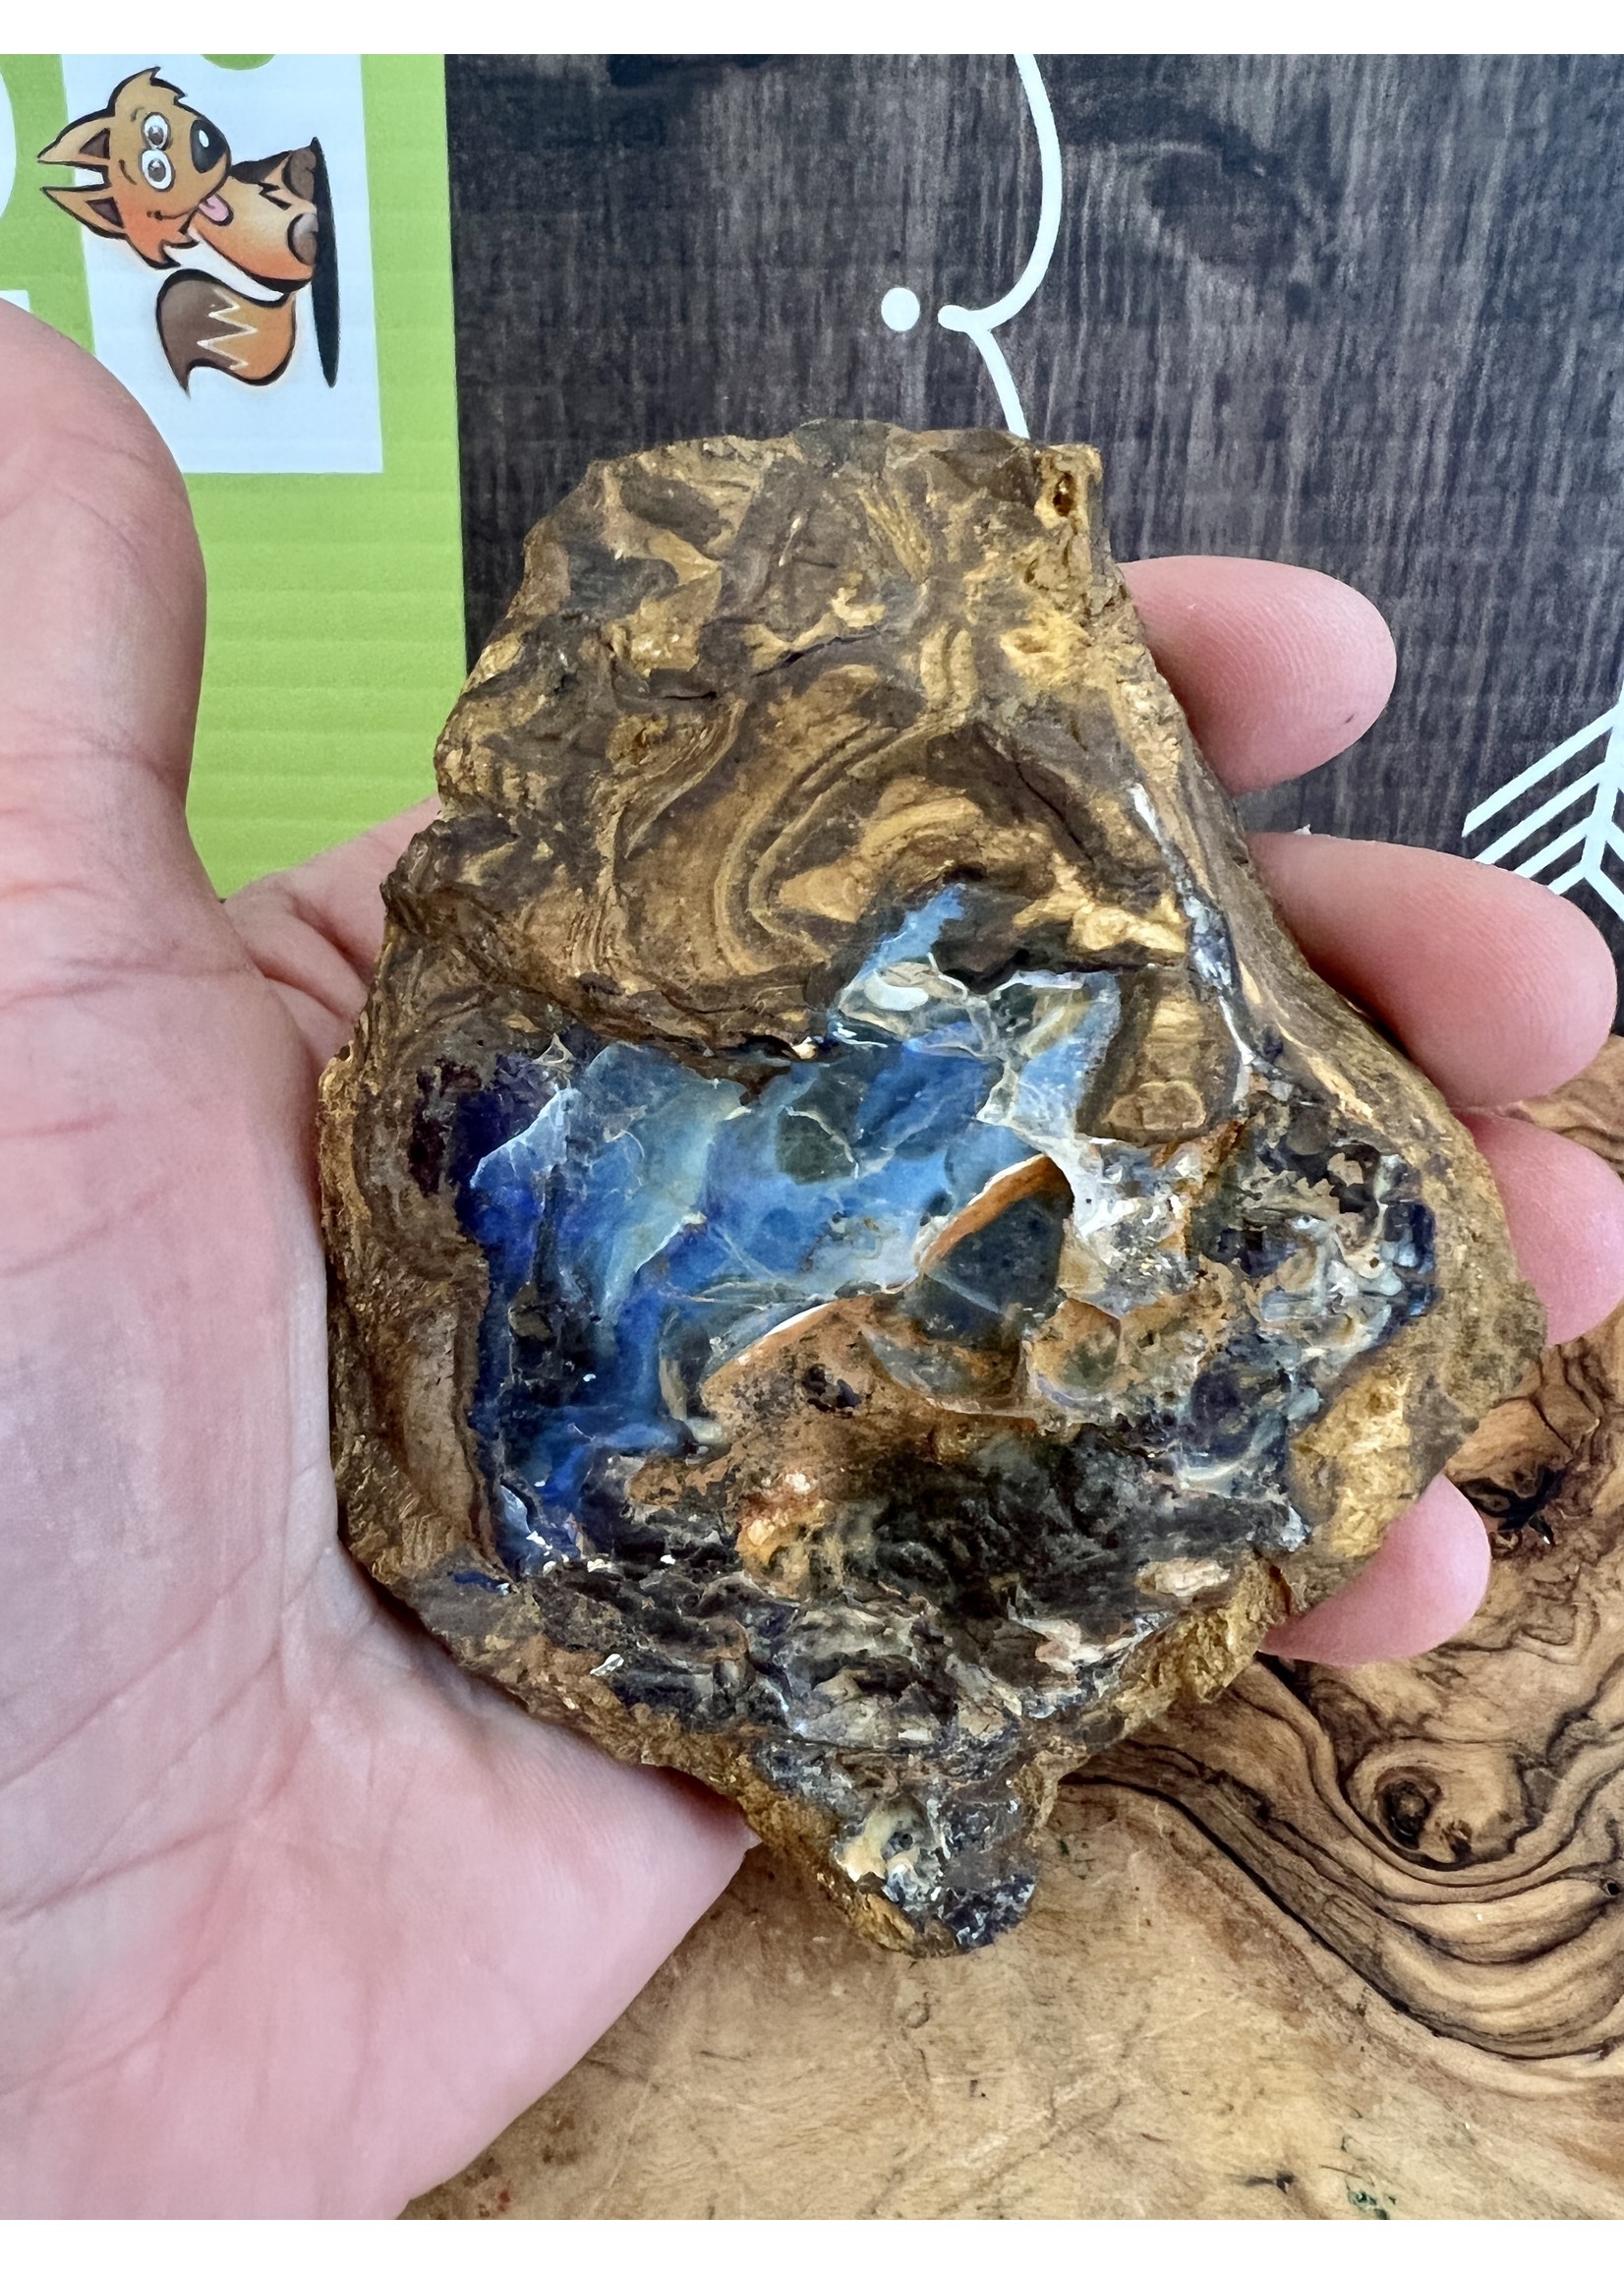 morceau opale boulder, symbolise la lumière, l'espoir, l’apaisement et l’harmonie